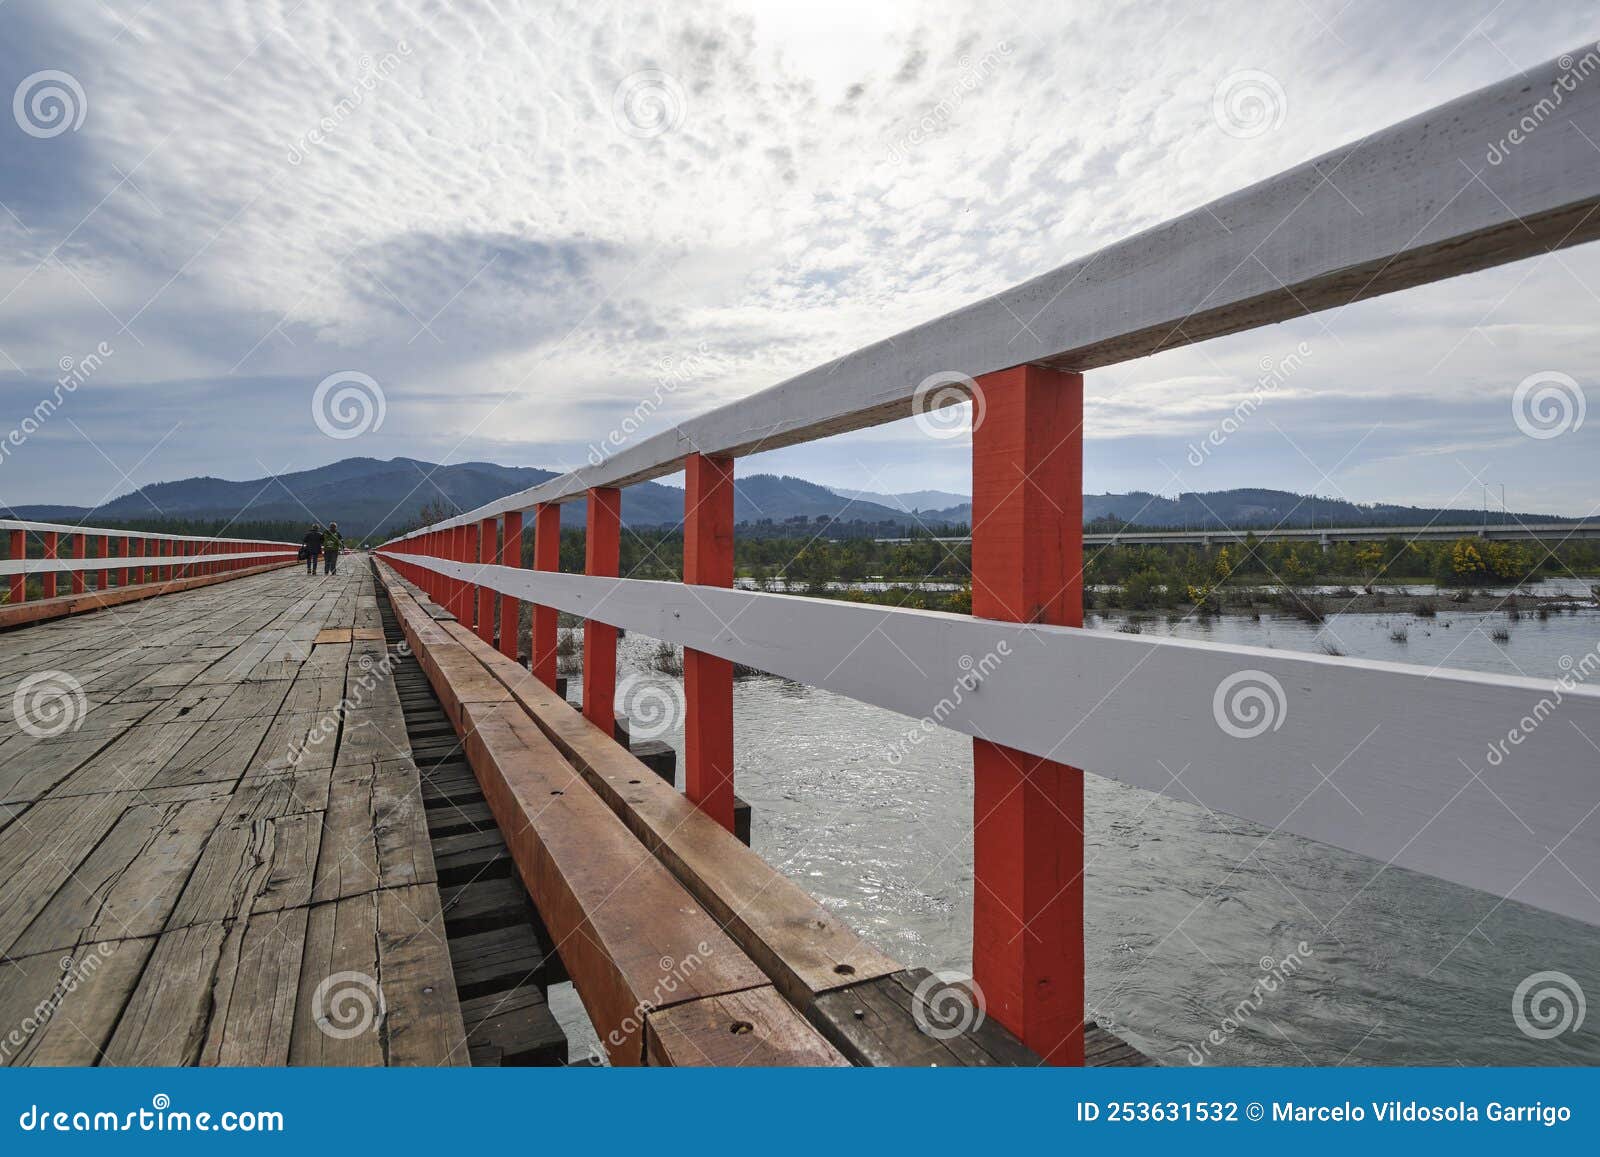 old wooden bridge in confluencia, chile